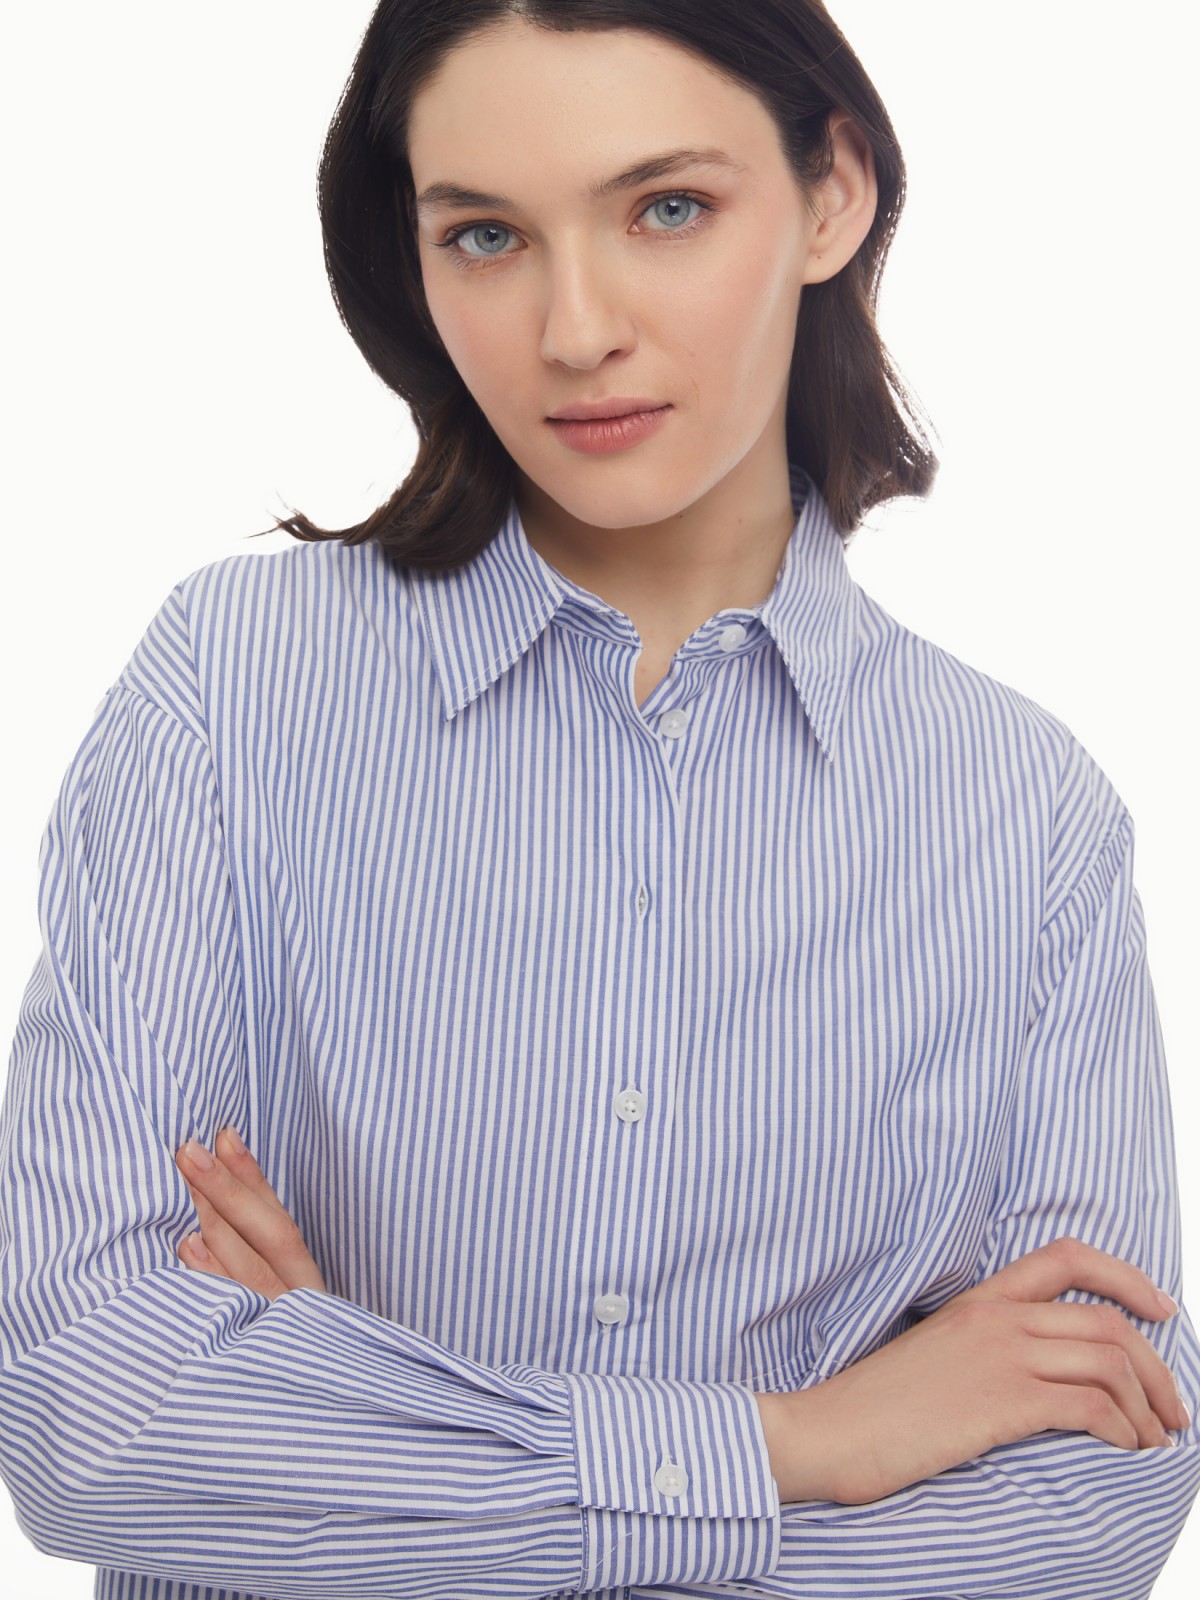 Блузка-рубашка в спортивном стиле с узором в полоску zolla 024131159053, цвет светло-голубой, размер XS - фото 3